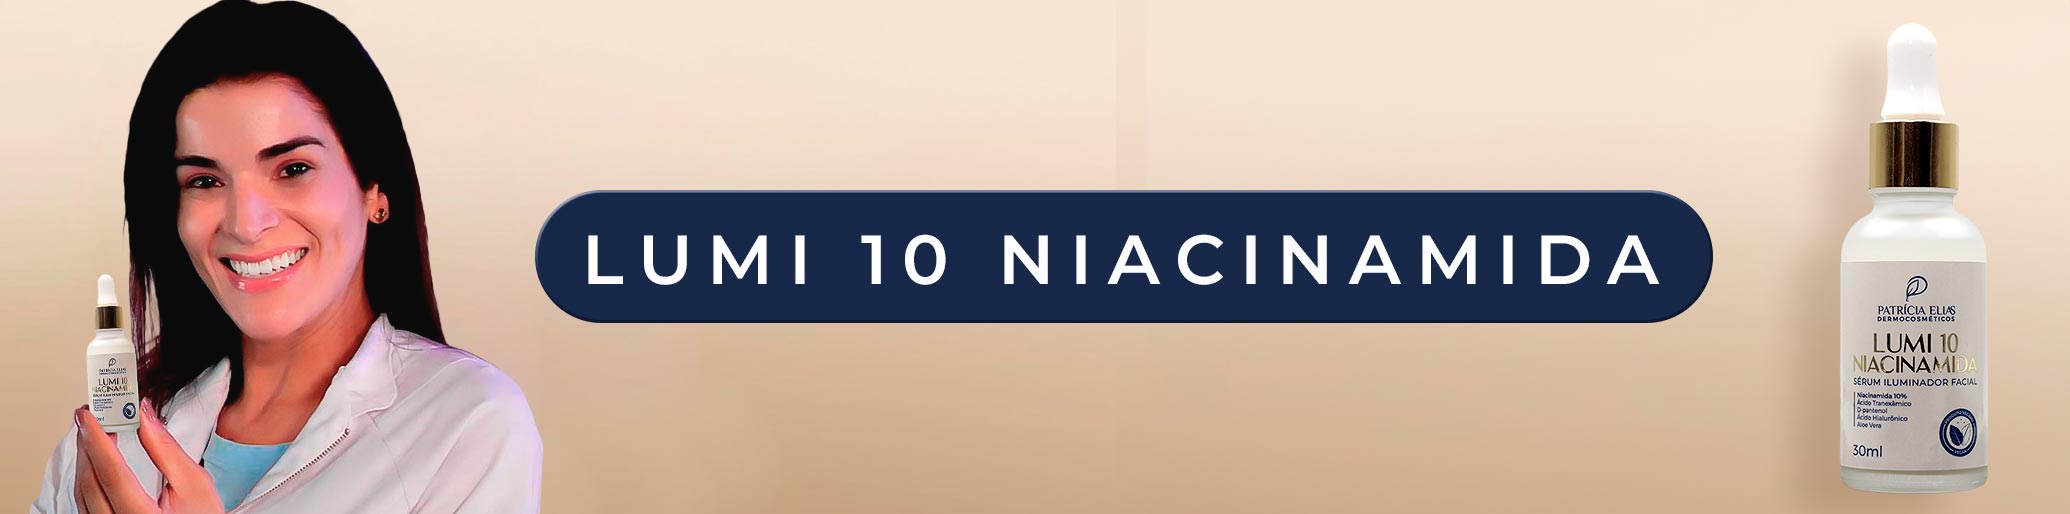 banner niacinamida